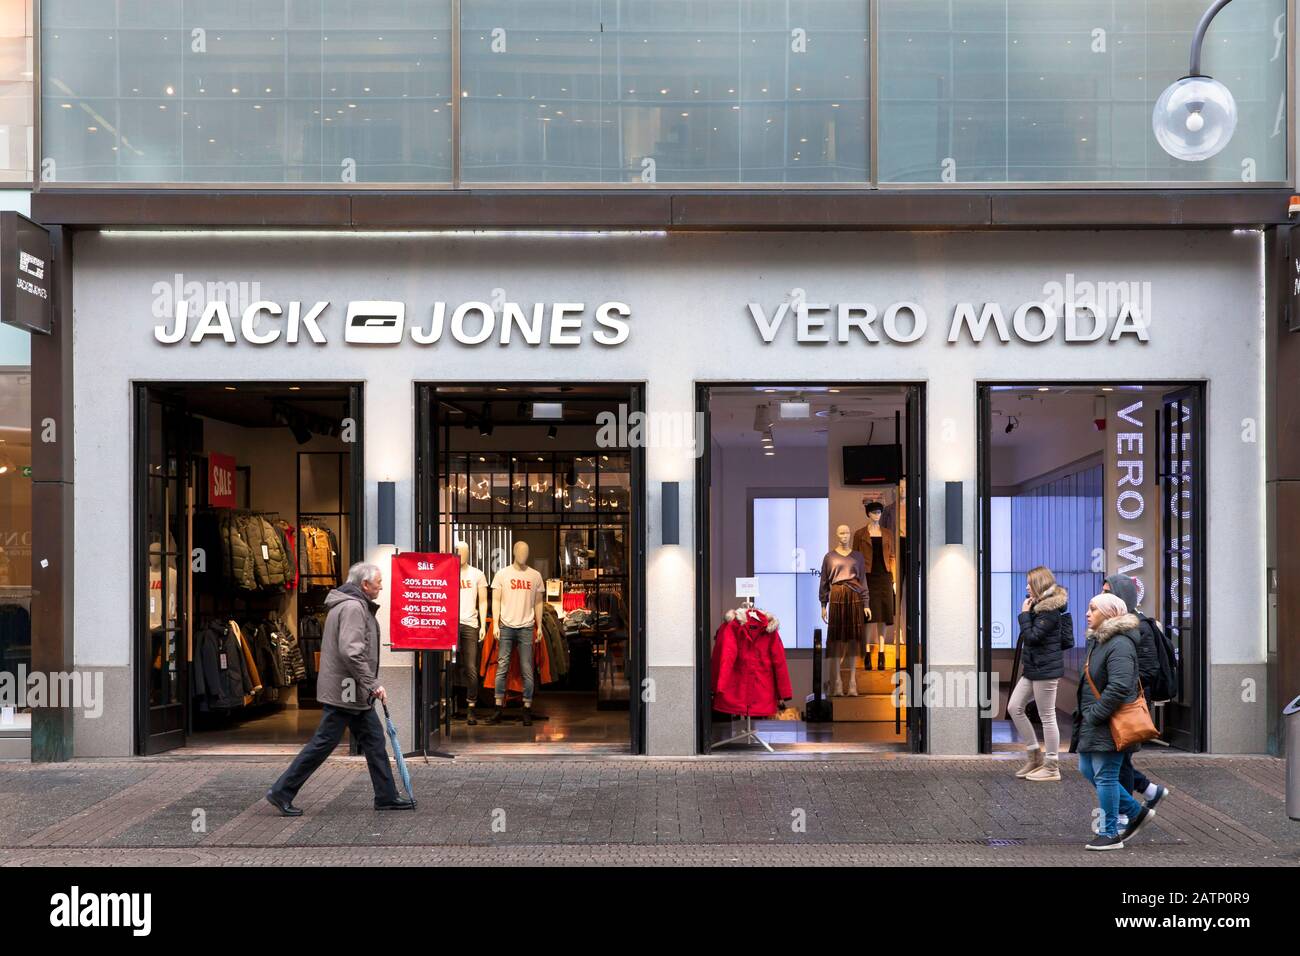 Jack & Jones und Vero Moda Geschäfte an der Einkaufsstraße Schildergasse,  Köln, Deutschland. Jack & Jones und Vero Moda Laeden auf der Einkaufsstraße  S Stockfotografie - Alamy